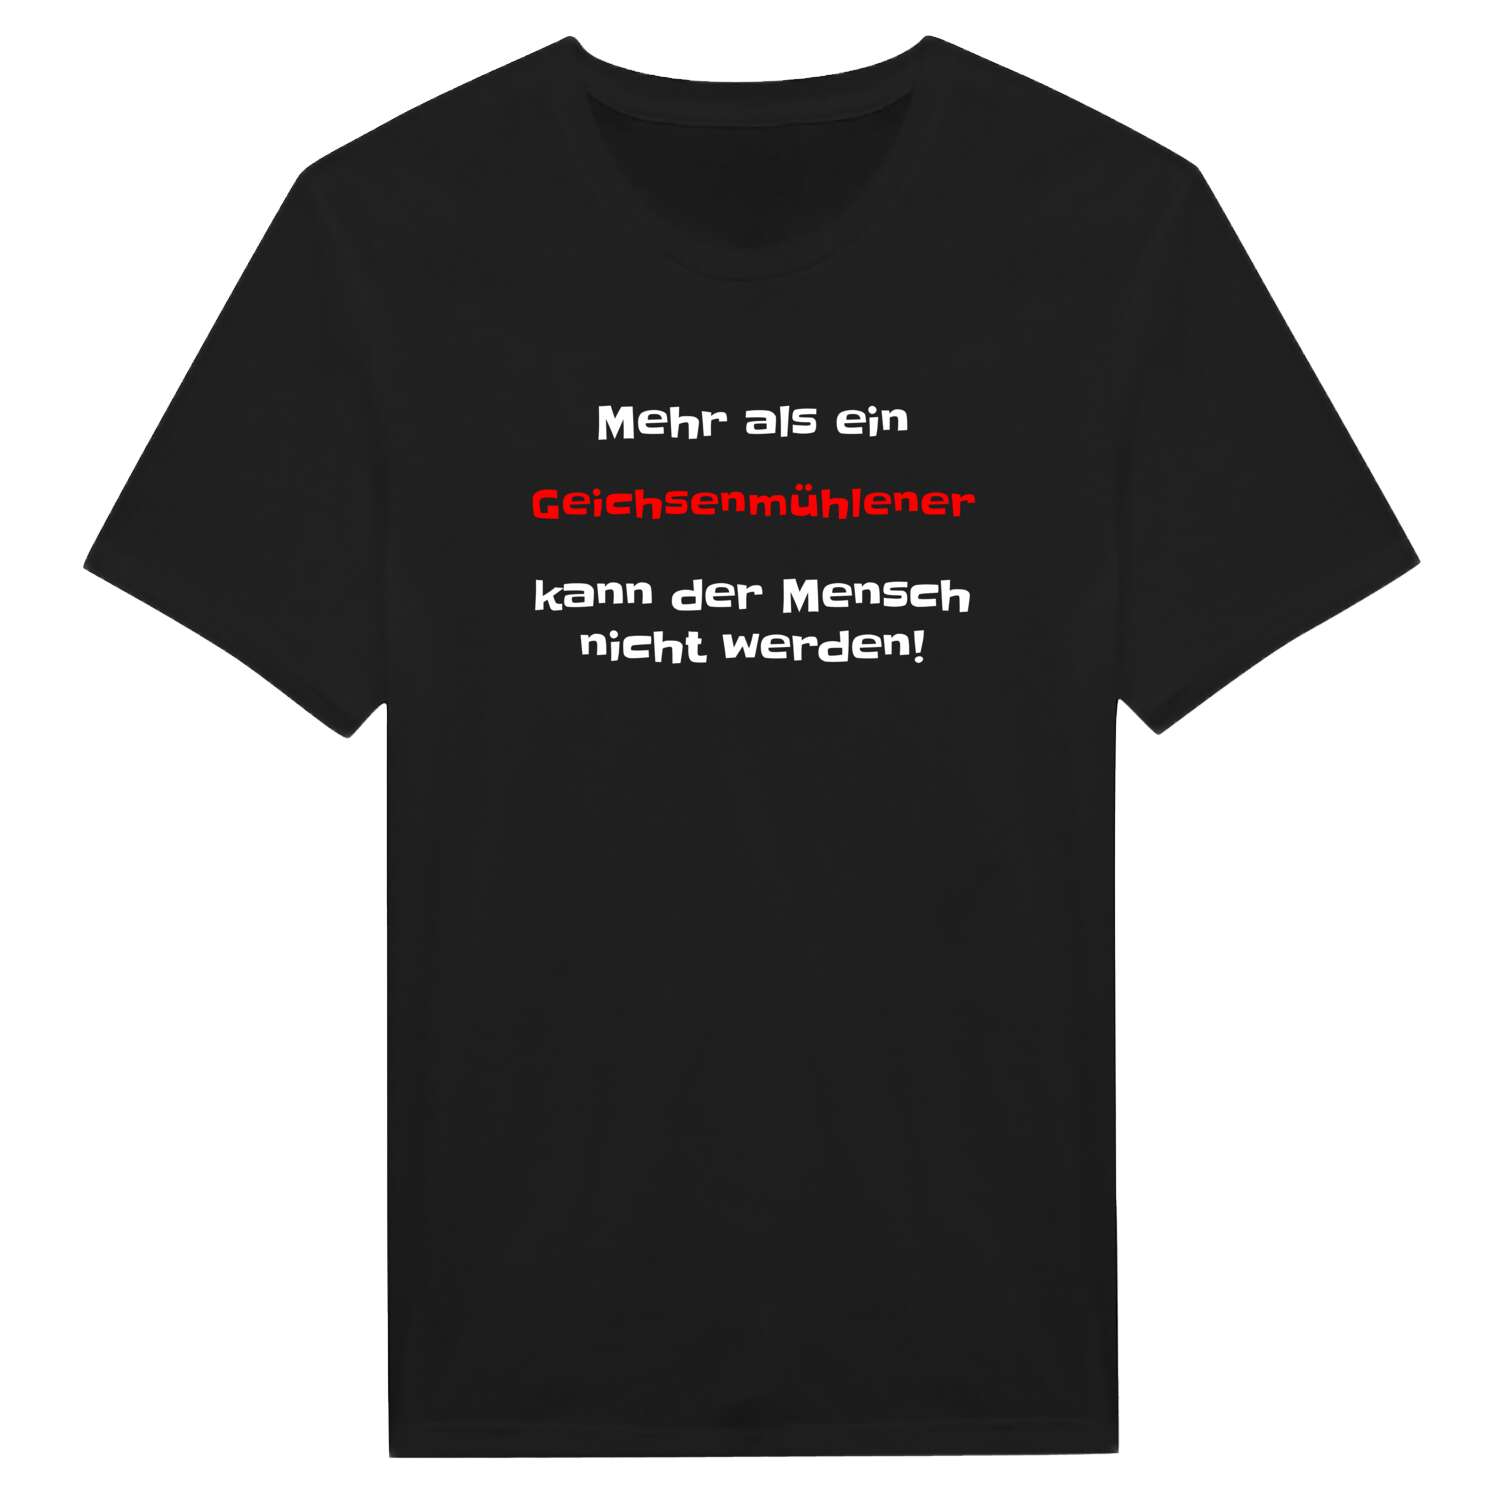 Geichsenmühle T-Shirt »Mehr als ein«